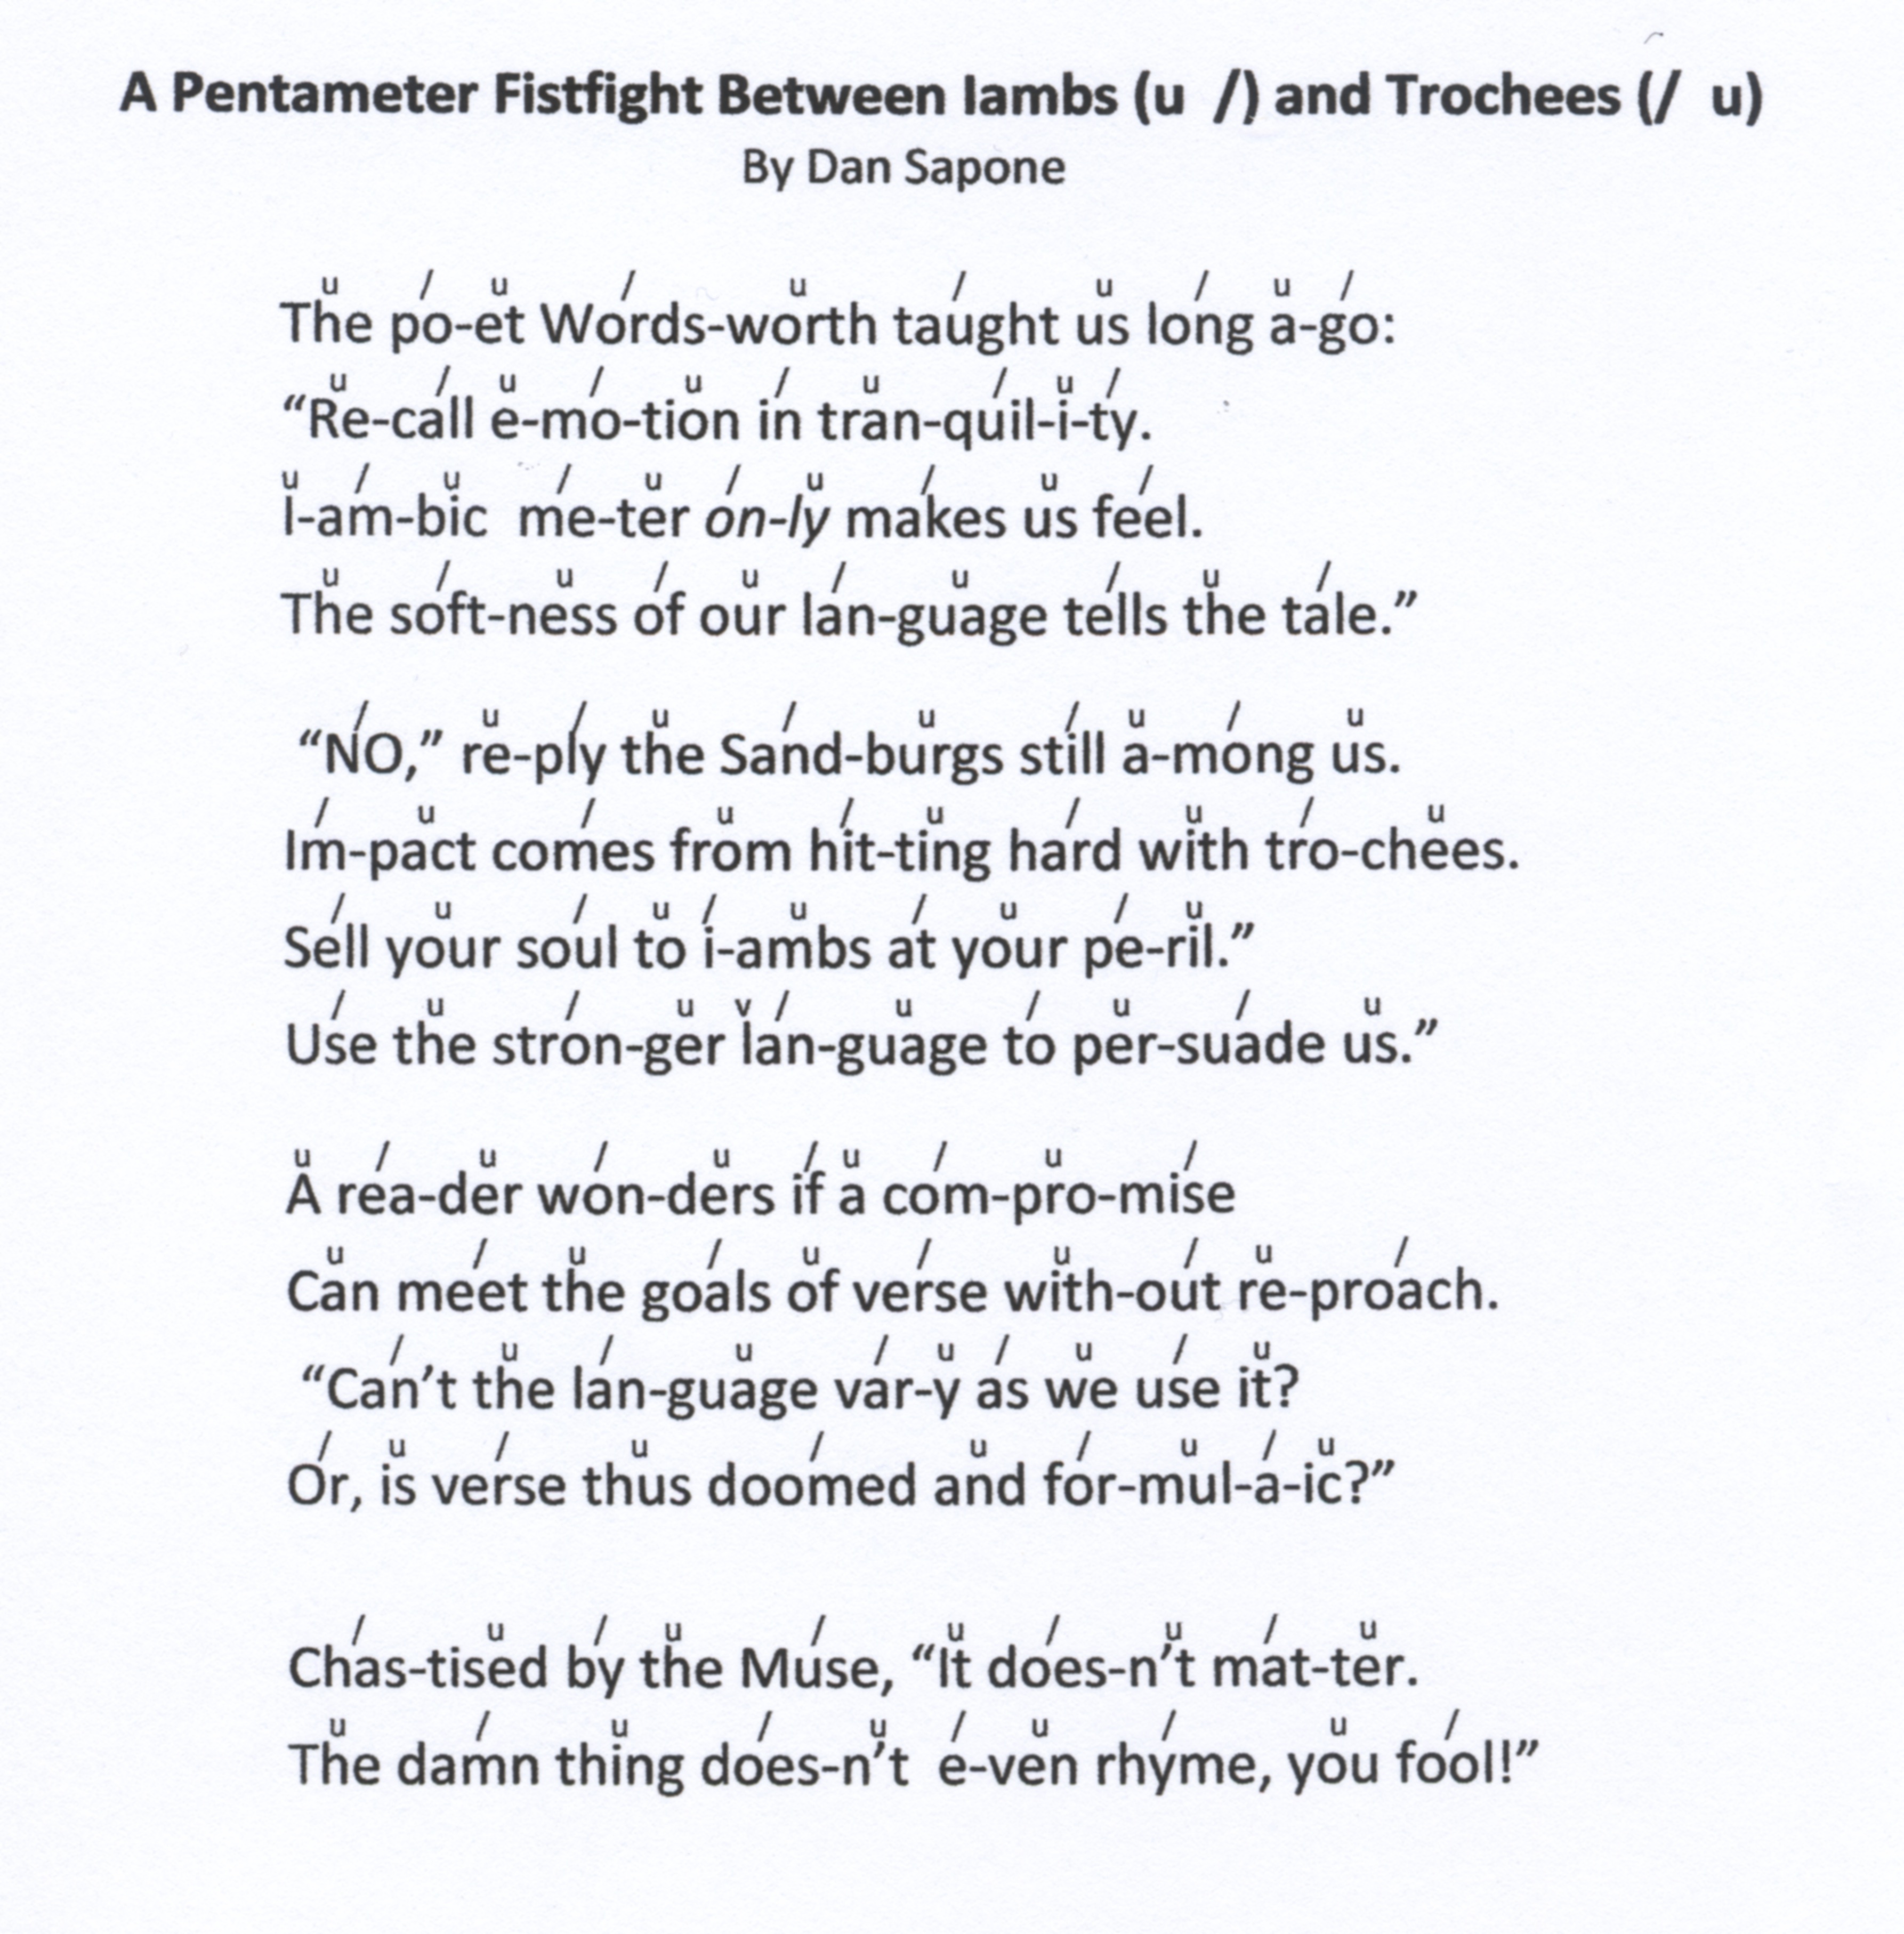 are sperian sonnets written iambic pentameters